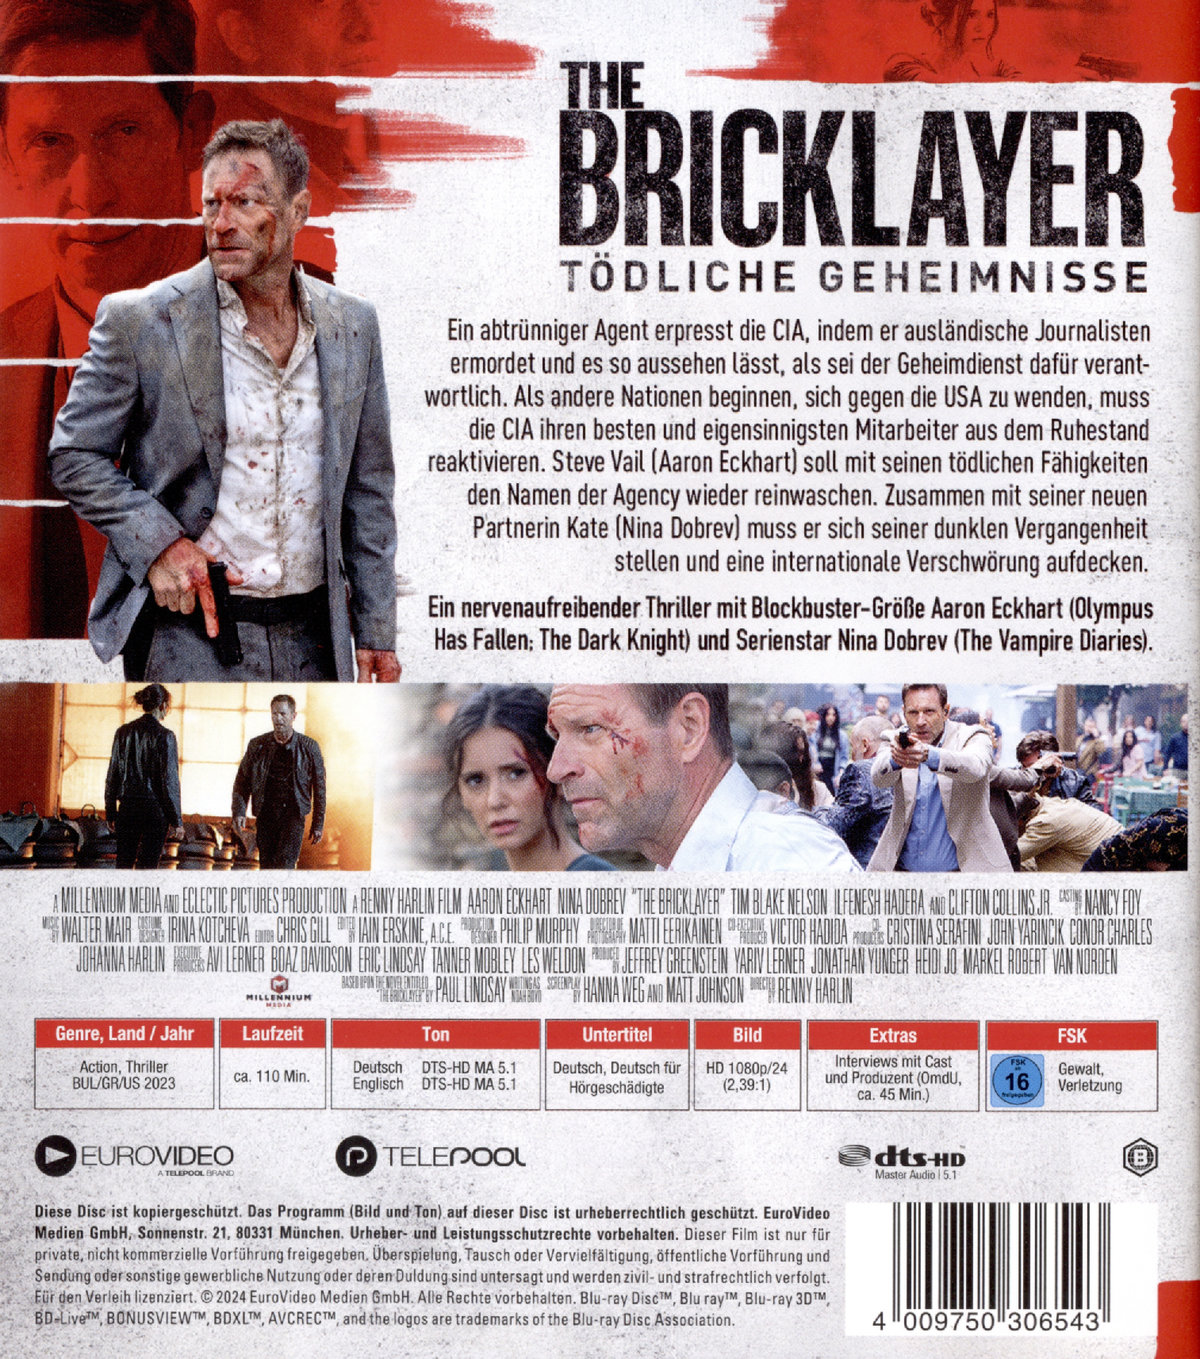 The Bricklayer - Tödliche Geheimnisse  (Blu-ray Disc)